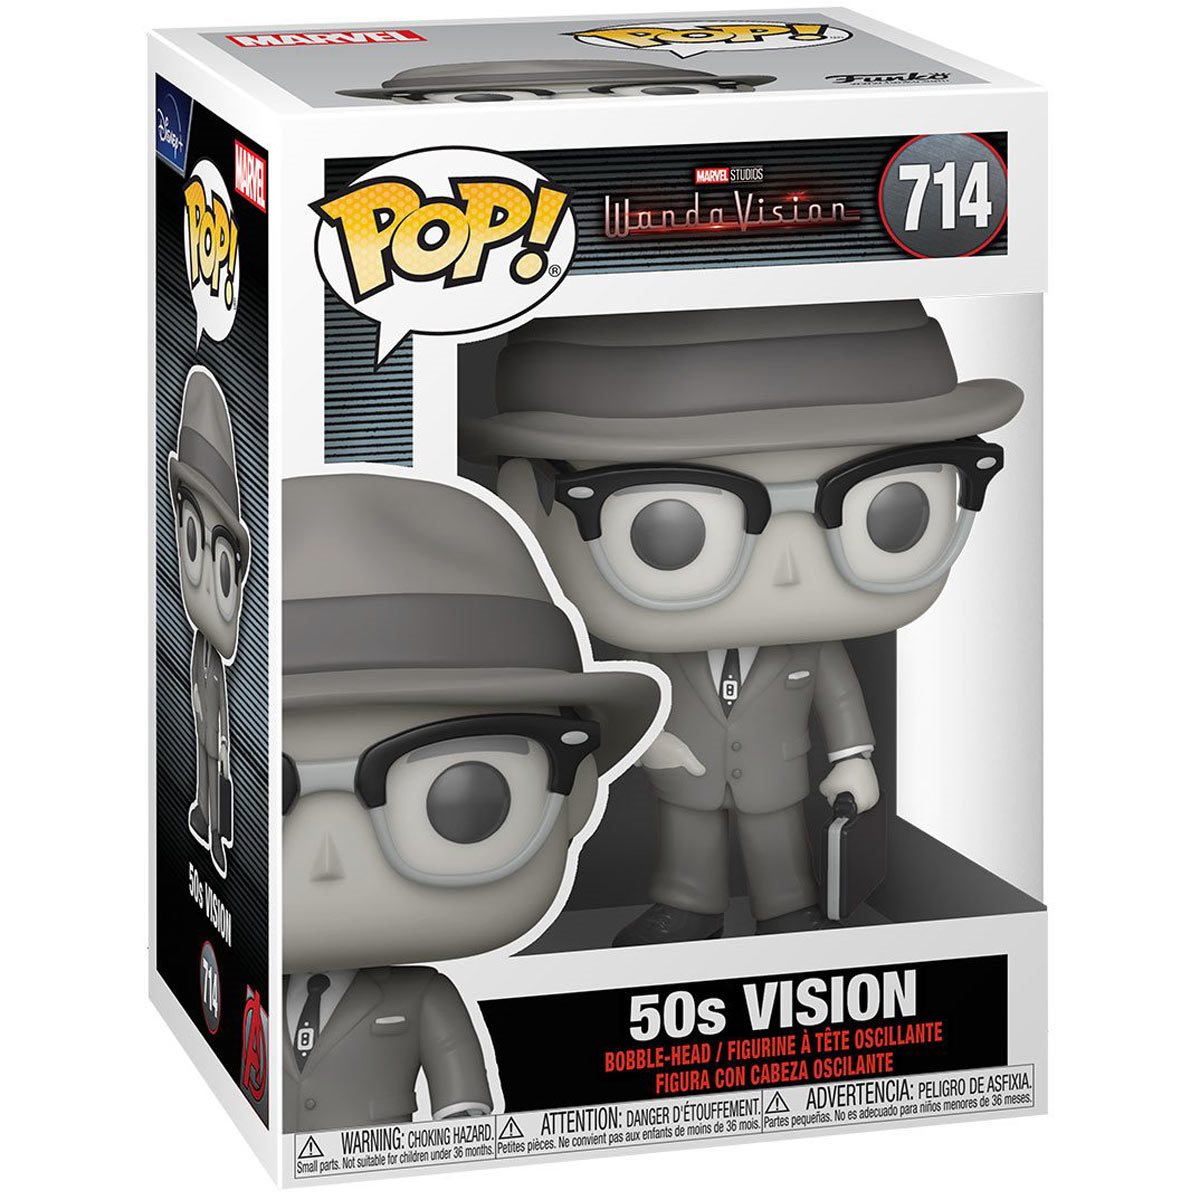 50's Vision 714 - Funko Pop! WandaVision